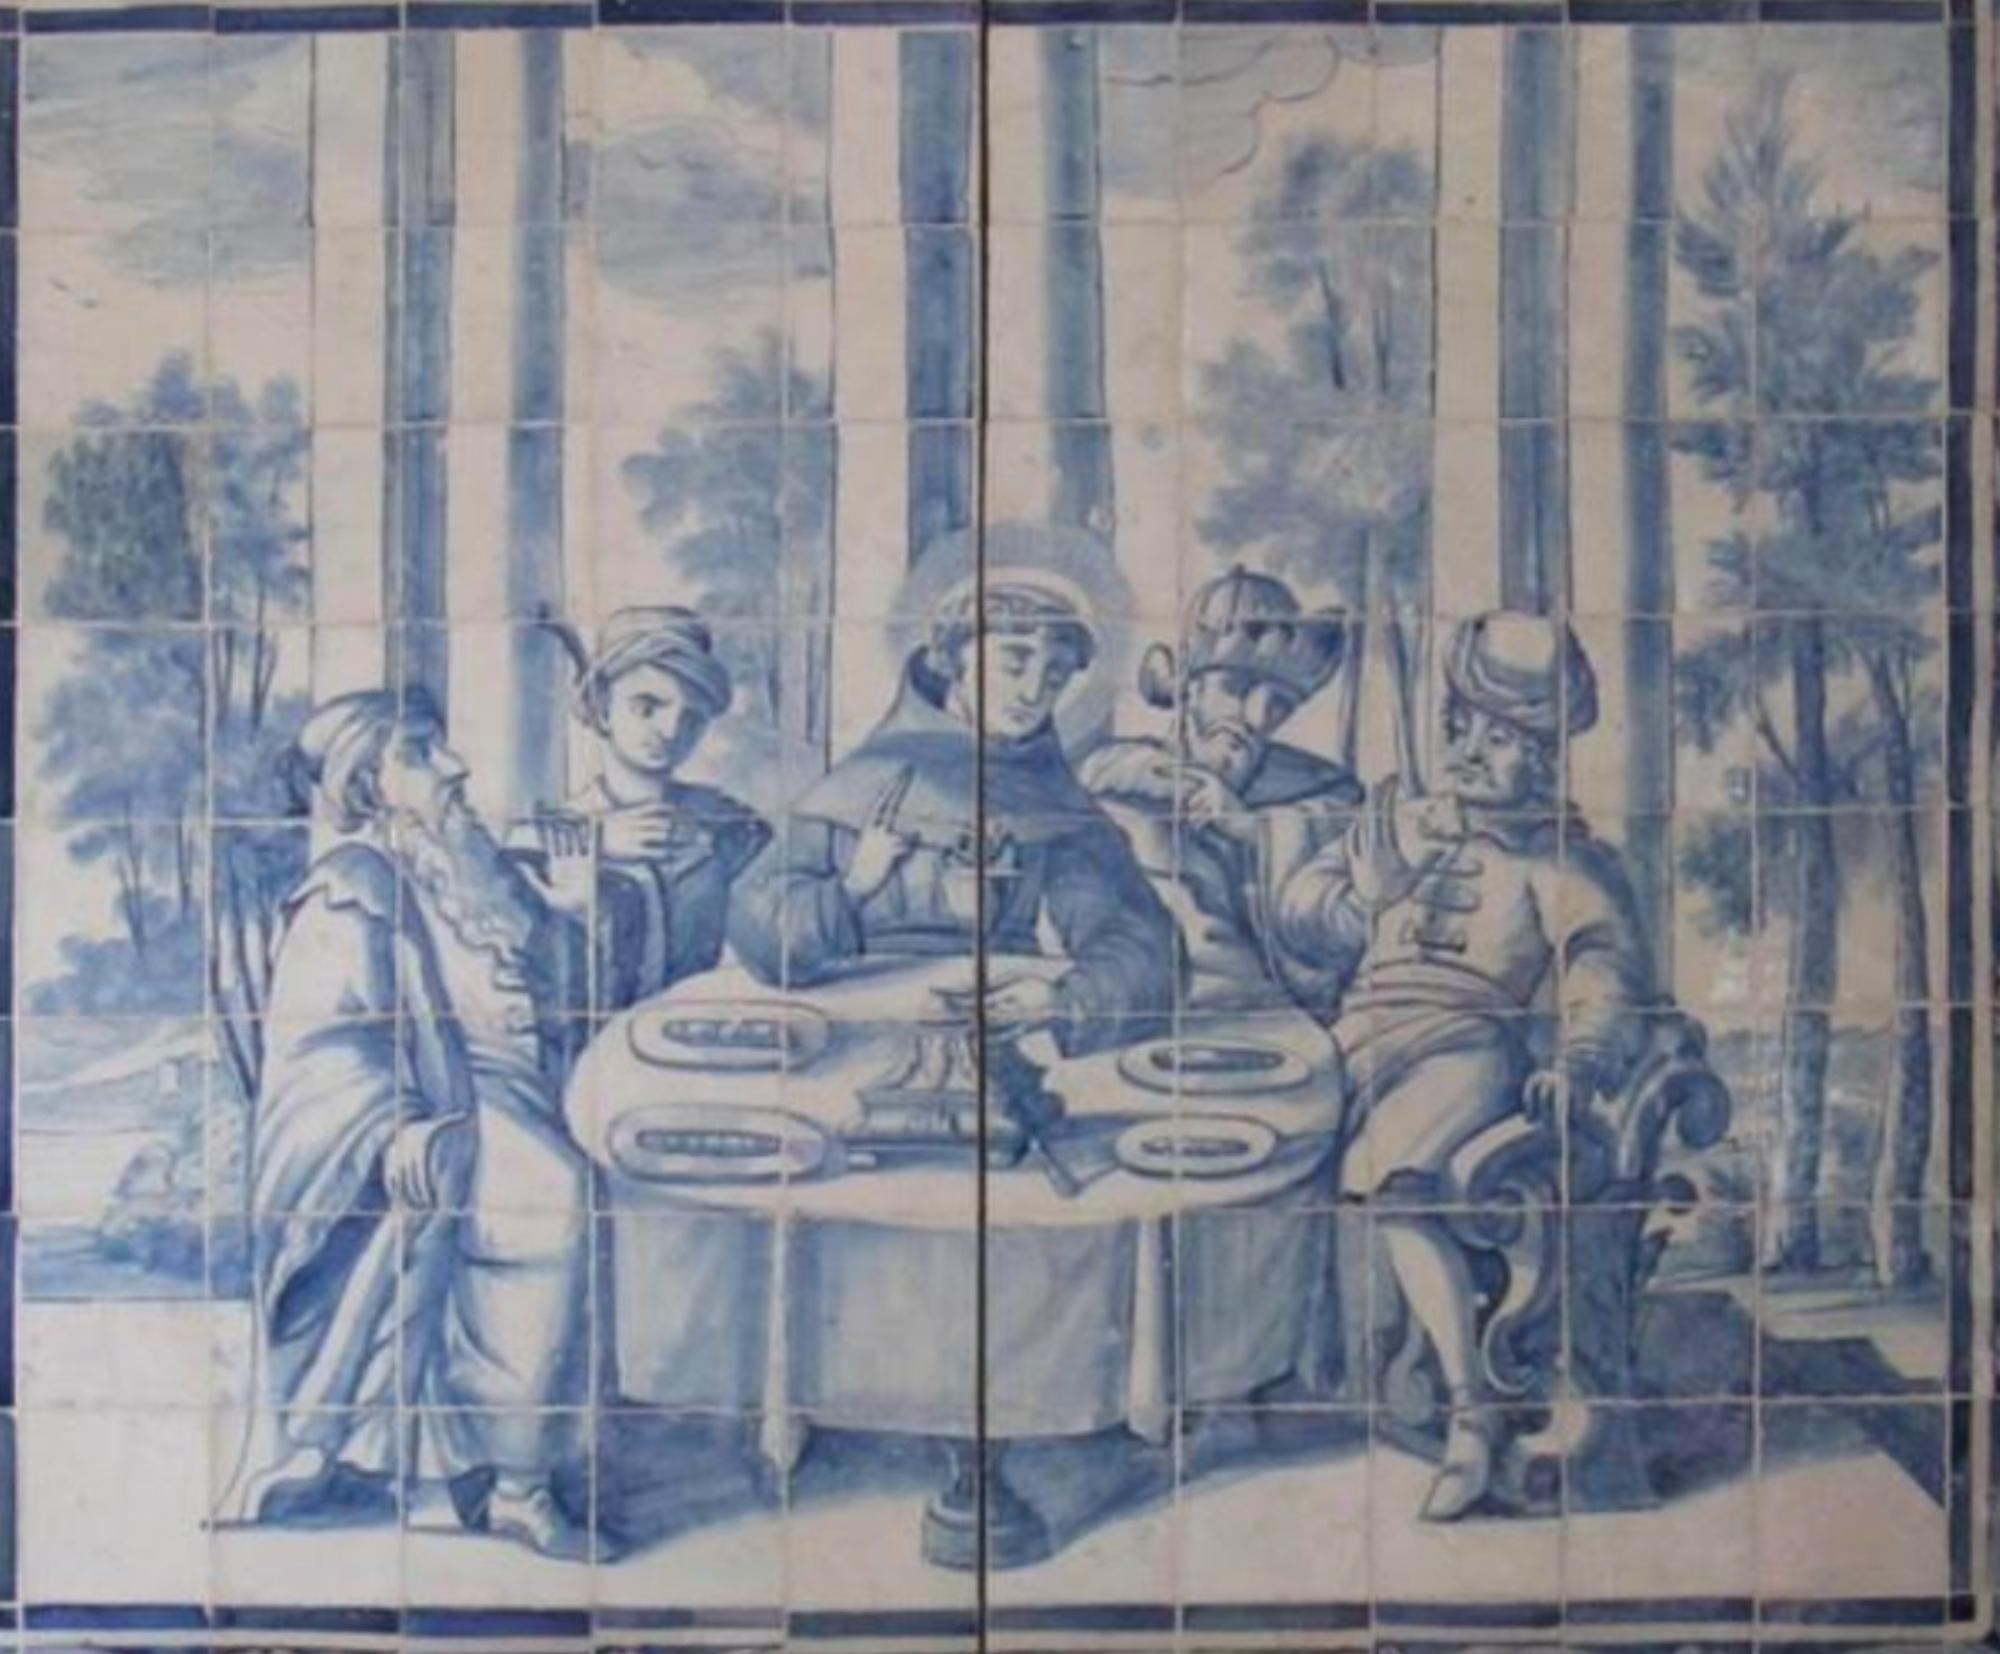 Alliance vierge portugaise du XVIIIe siècle 
Mesures : 196 cm x 168 cm
168 carreaux

Importante note : ce panneau est accompagné des carreaux restaurés du 18ème siècle.
Le panneau est livré comme s'il s'agissait d'un tableau avec un squelette